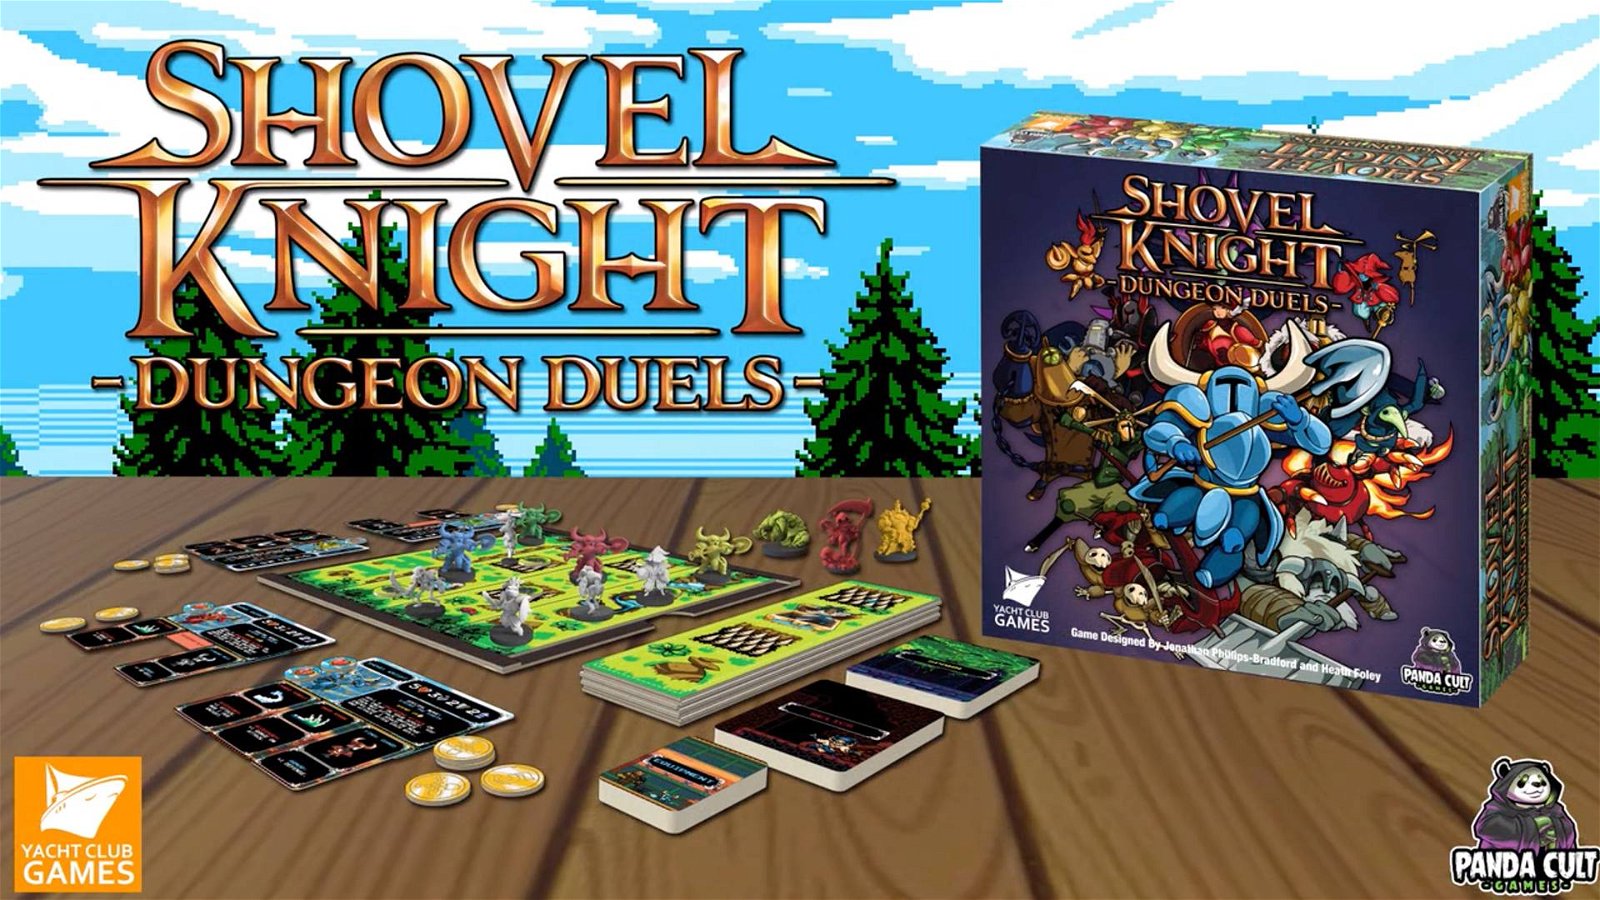 Immagine di Shovel Knight - Dungeon Duels su Kickstarter il gioco da tavolo di Shovel Knight